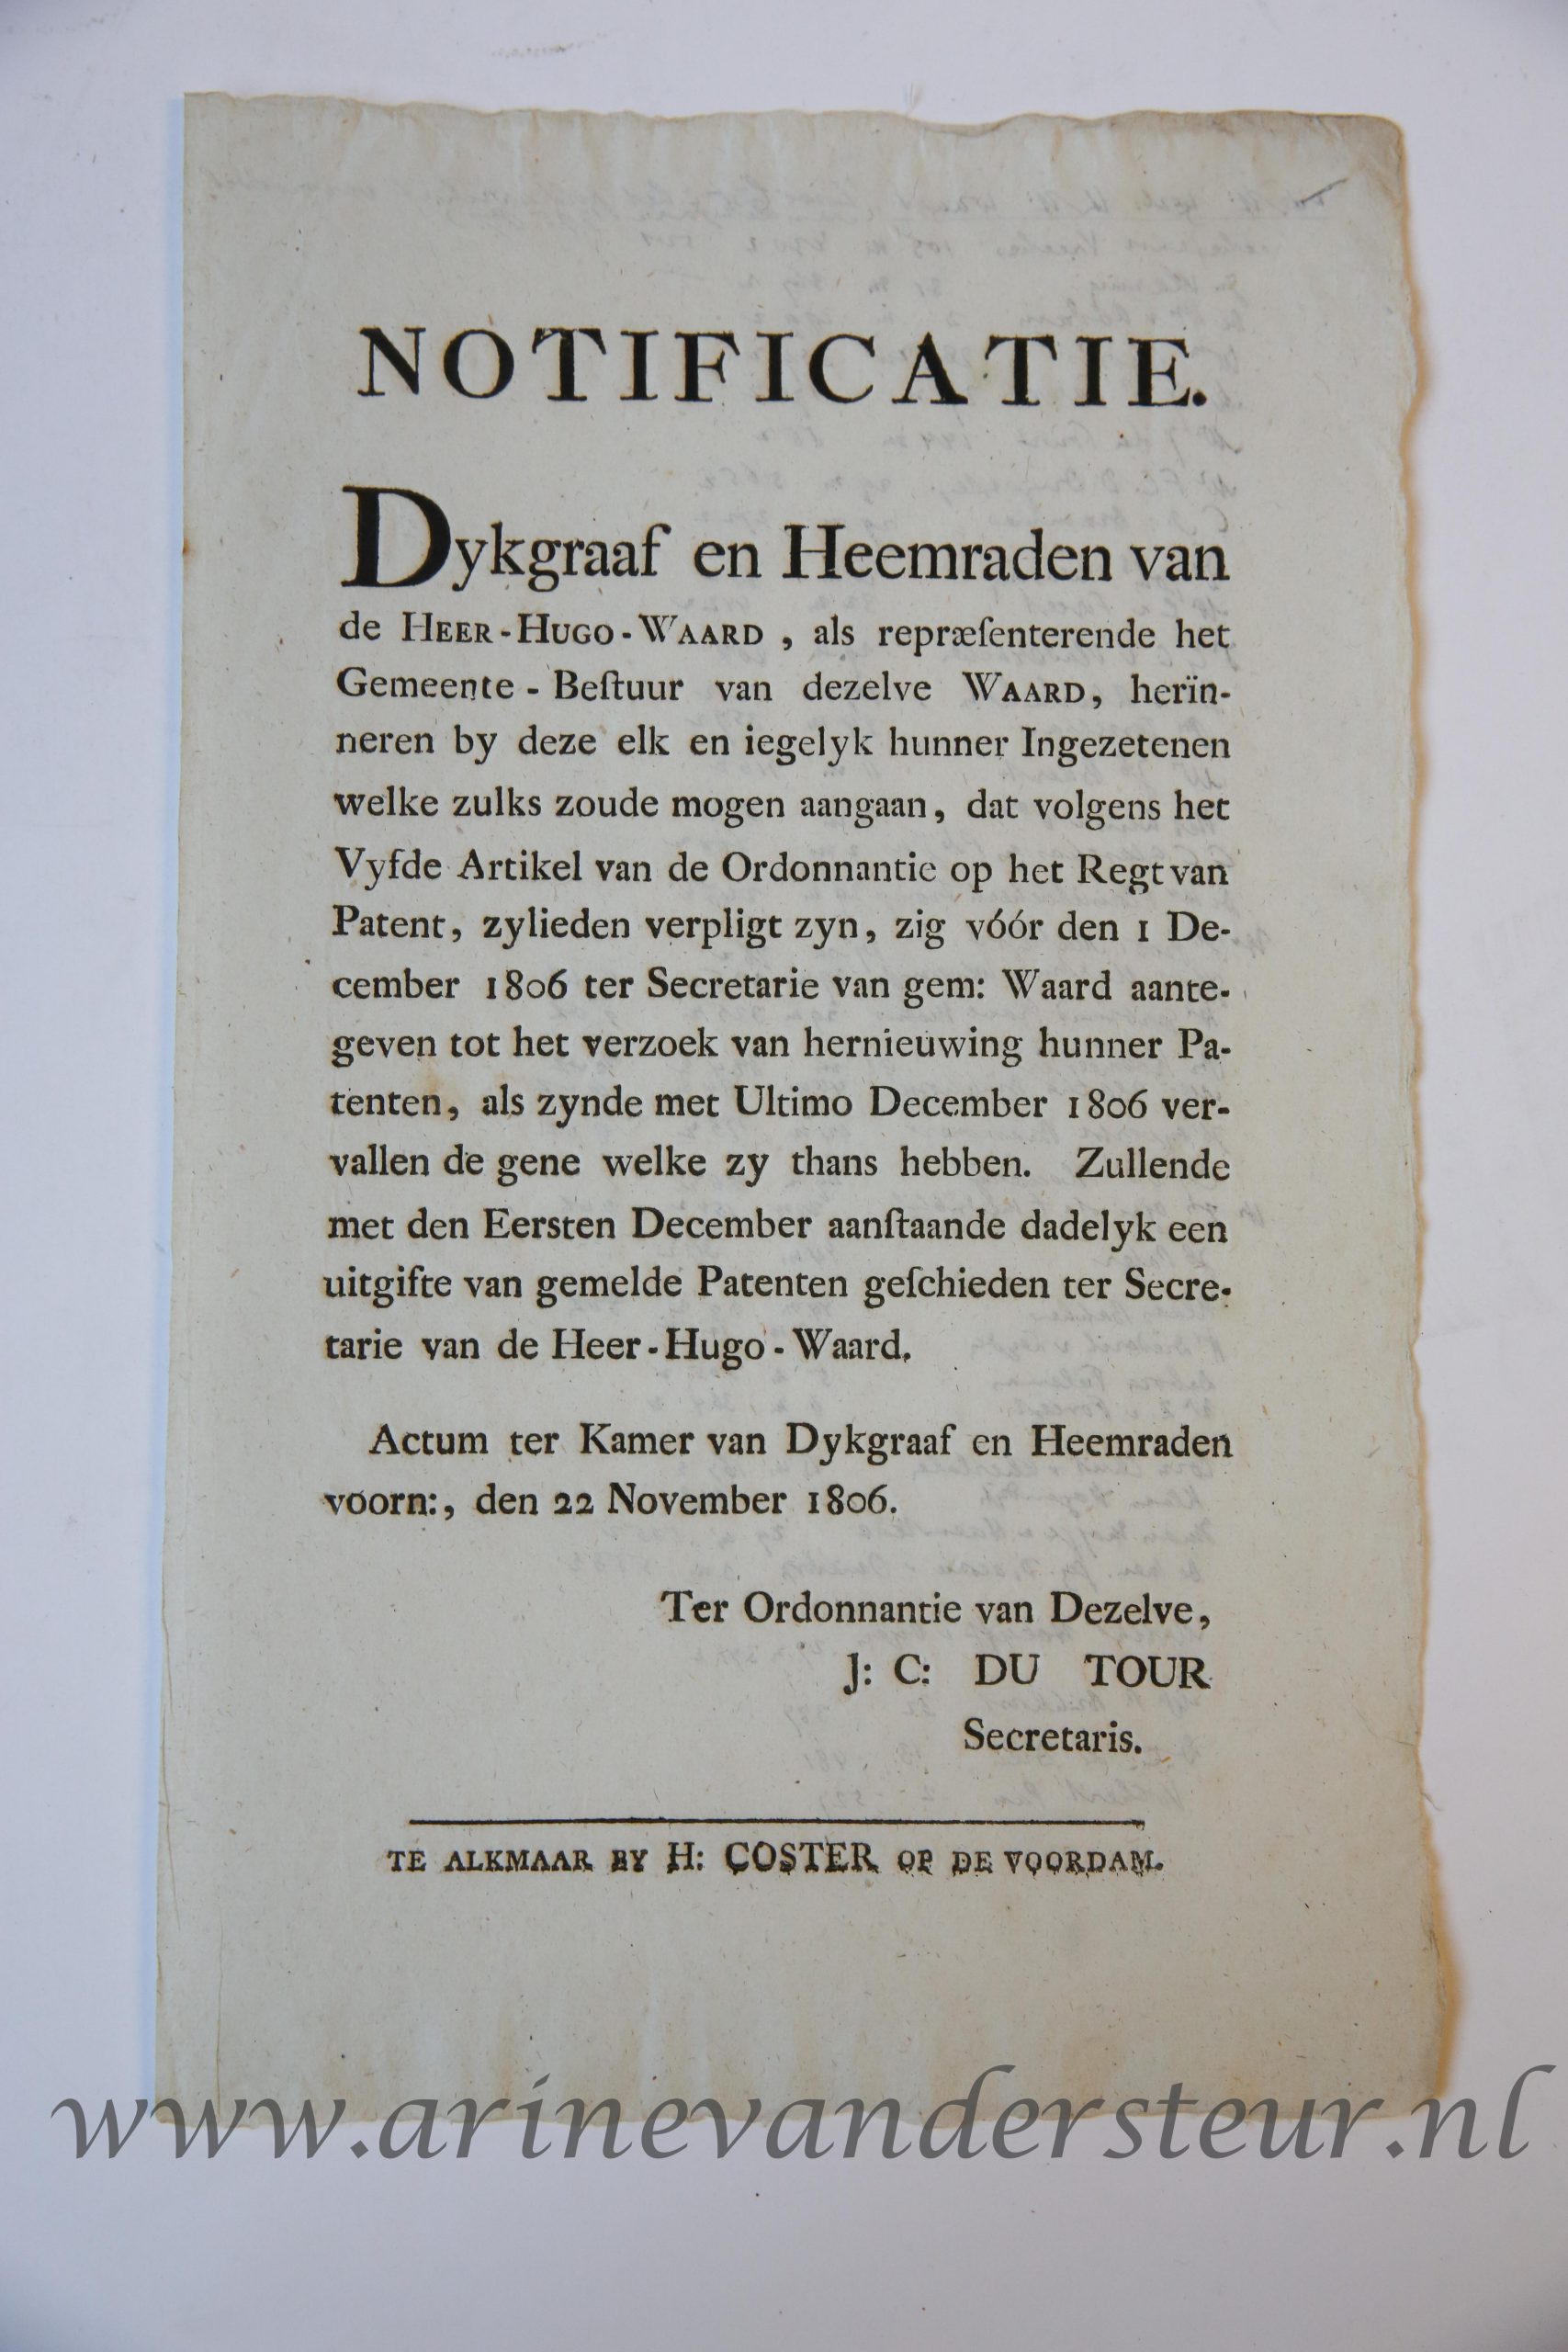  - HEERHUGOWAARD--- Notificatie van dykgraaf en heemraden van de Heer-Hugo-Waard, d.d. 22-11-1806, betr. recht van patent. 1 blad, plano, gedrukt (bij H. Coster te Alkmaar).